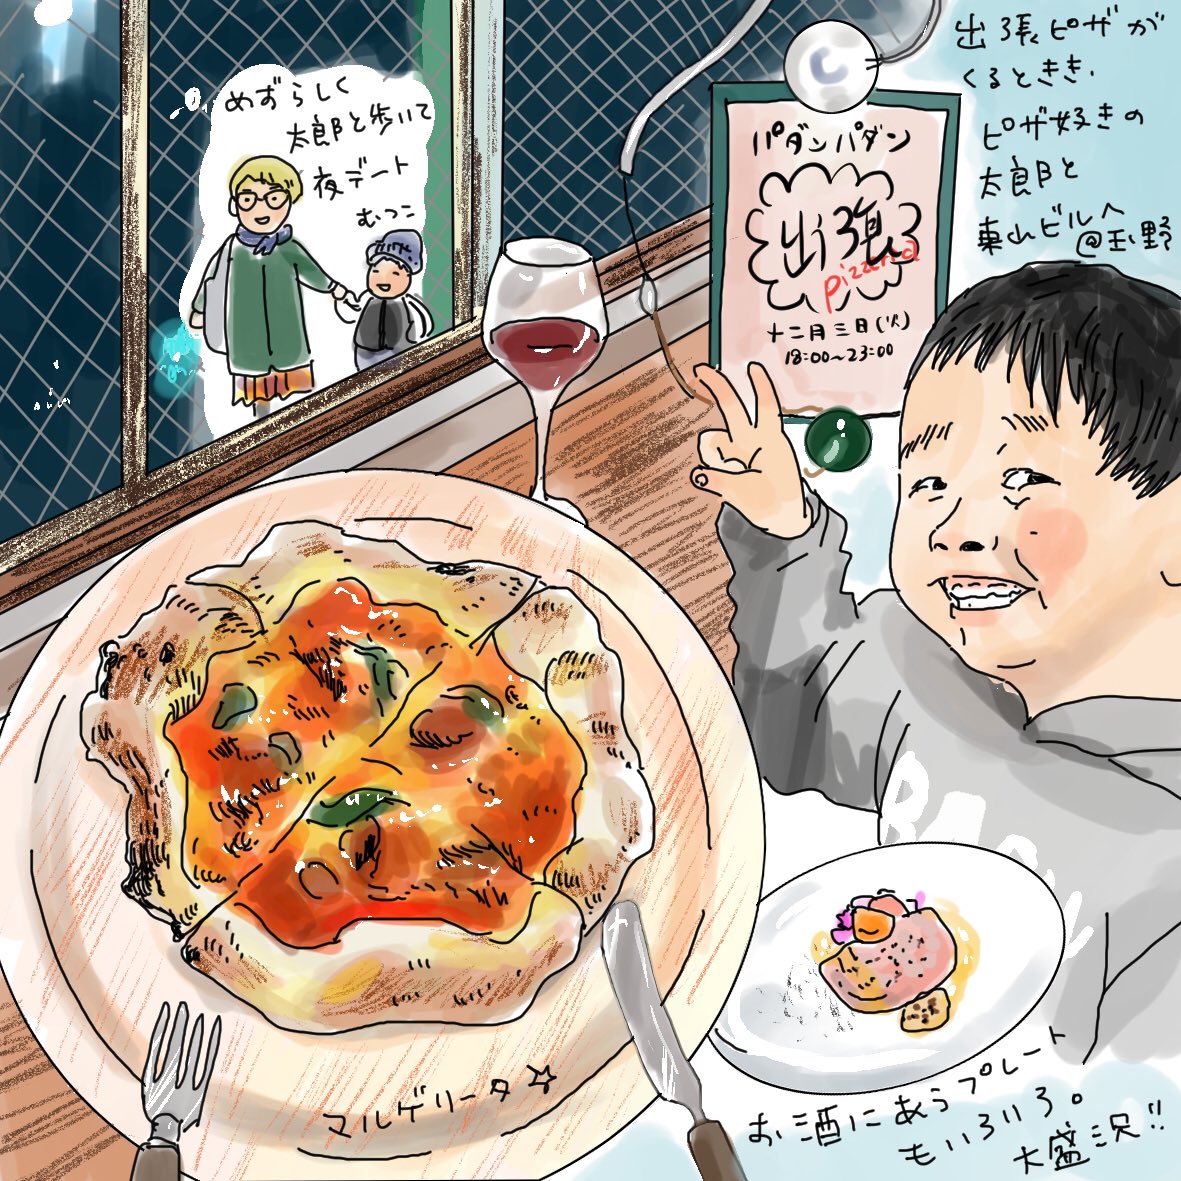 Uzivatel Hamatake Mutsuko Na Twitteru ピザ食べいってん